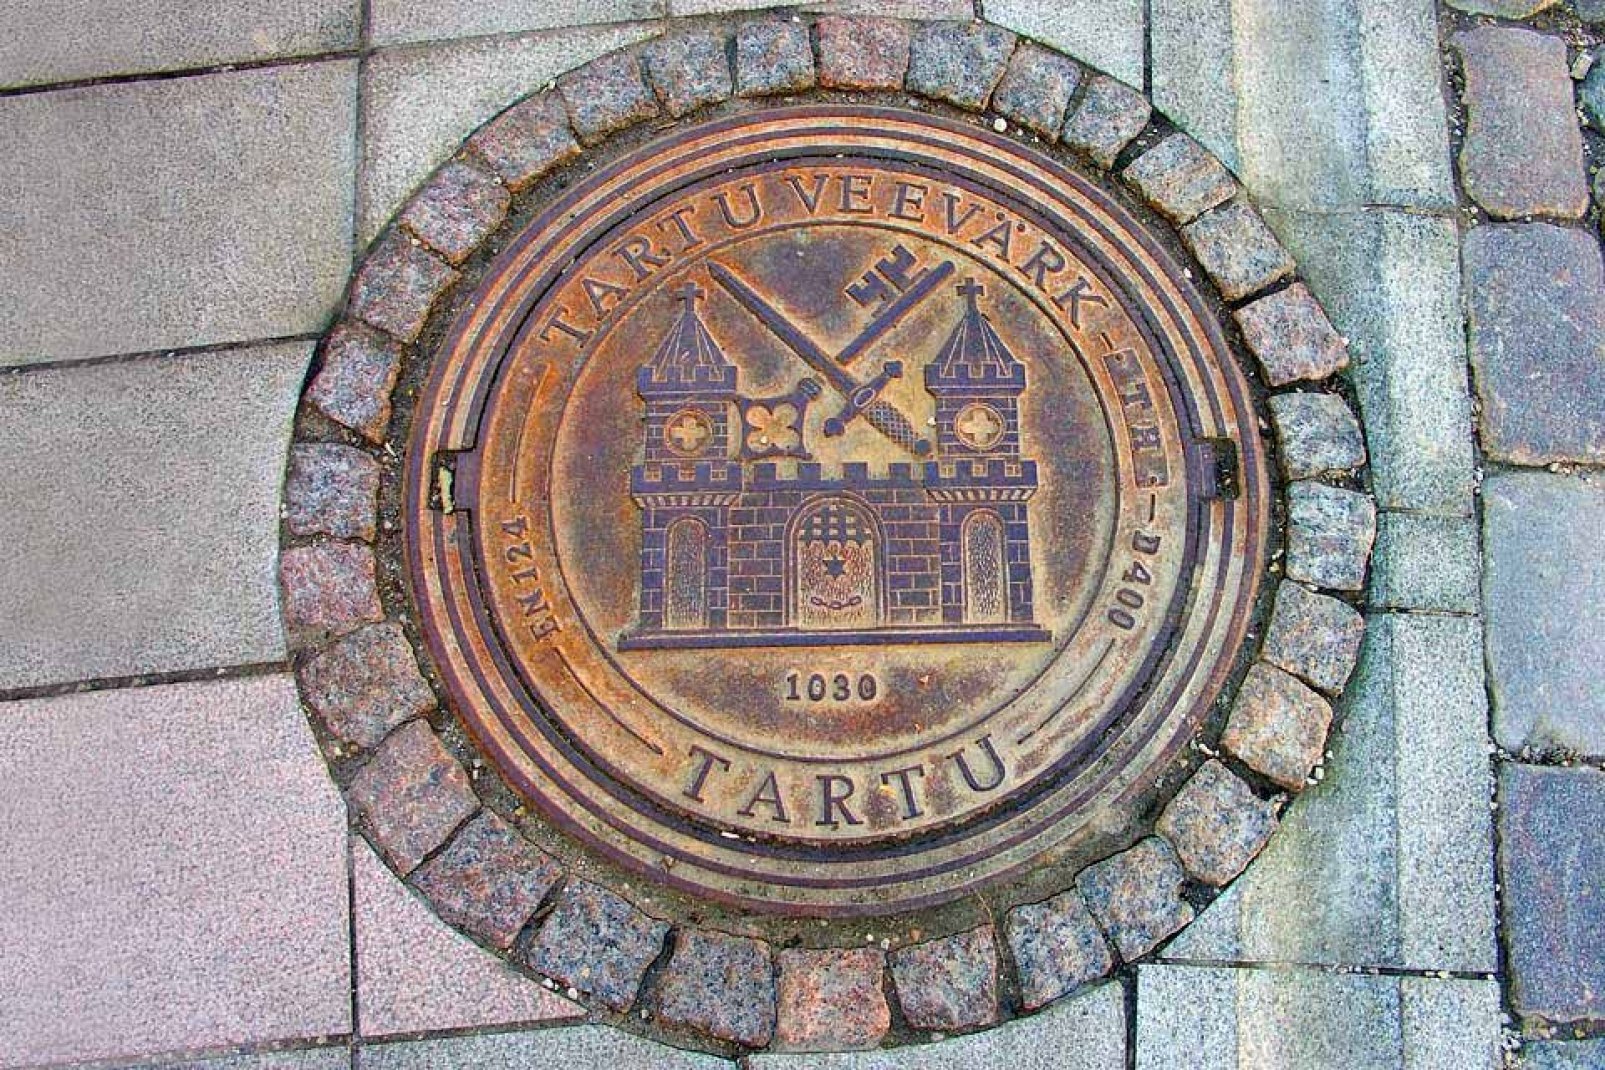 Tartu è rinomata in tutta Europa per la sua università fondata nel 1632.